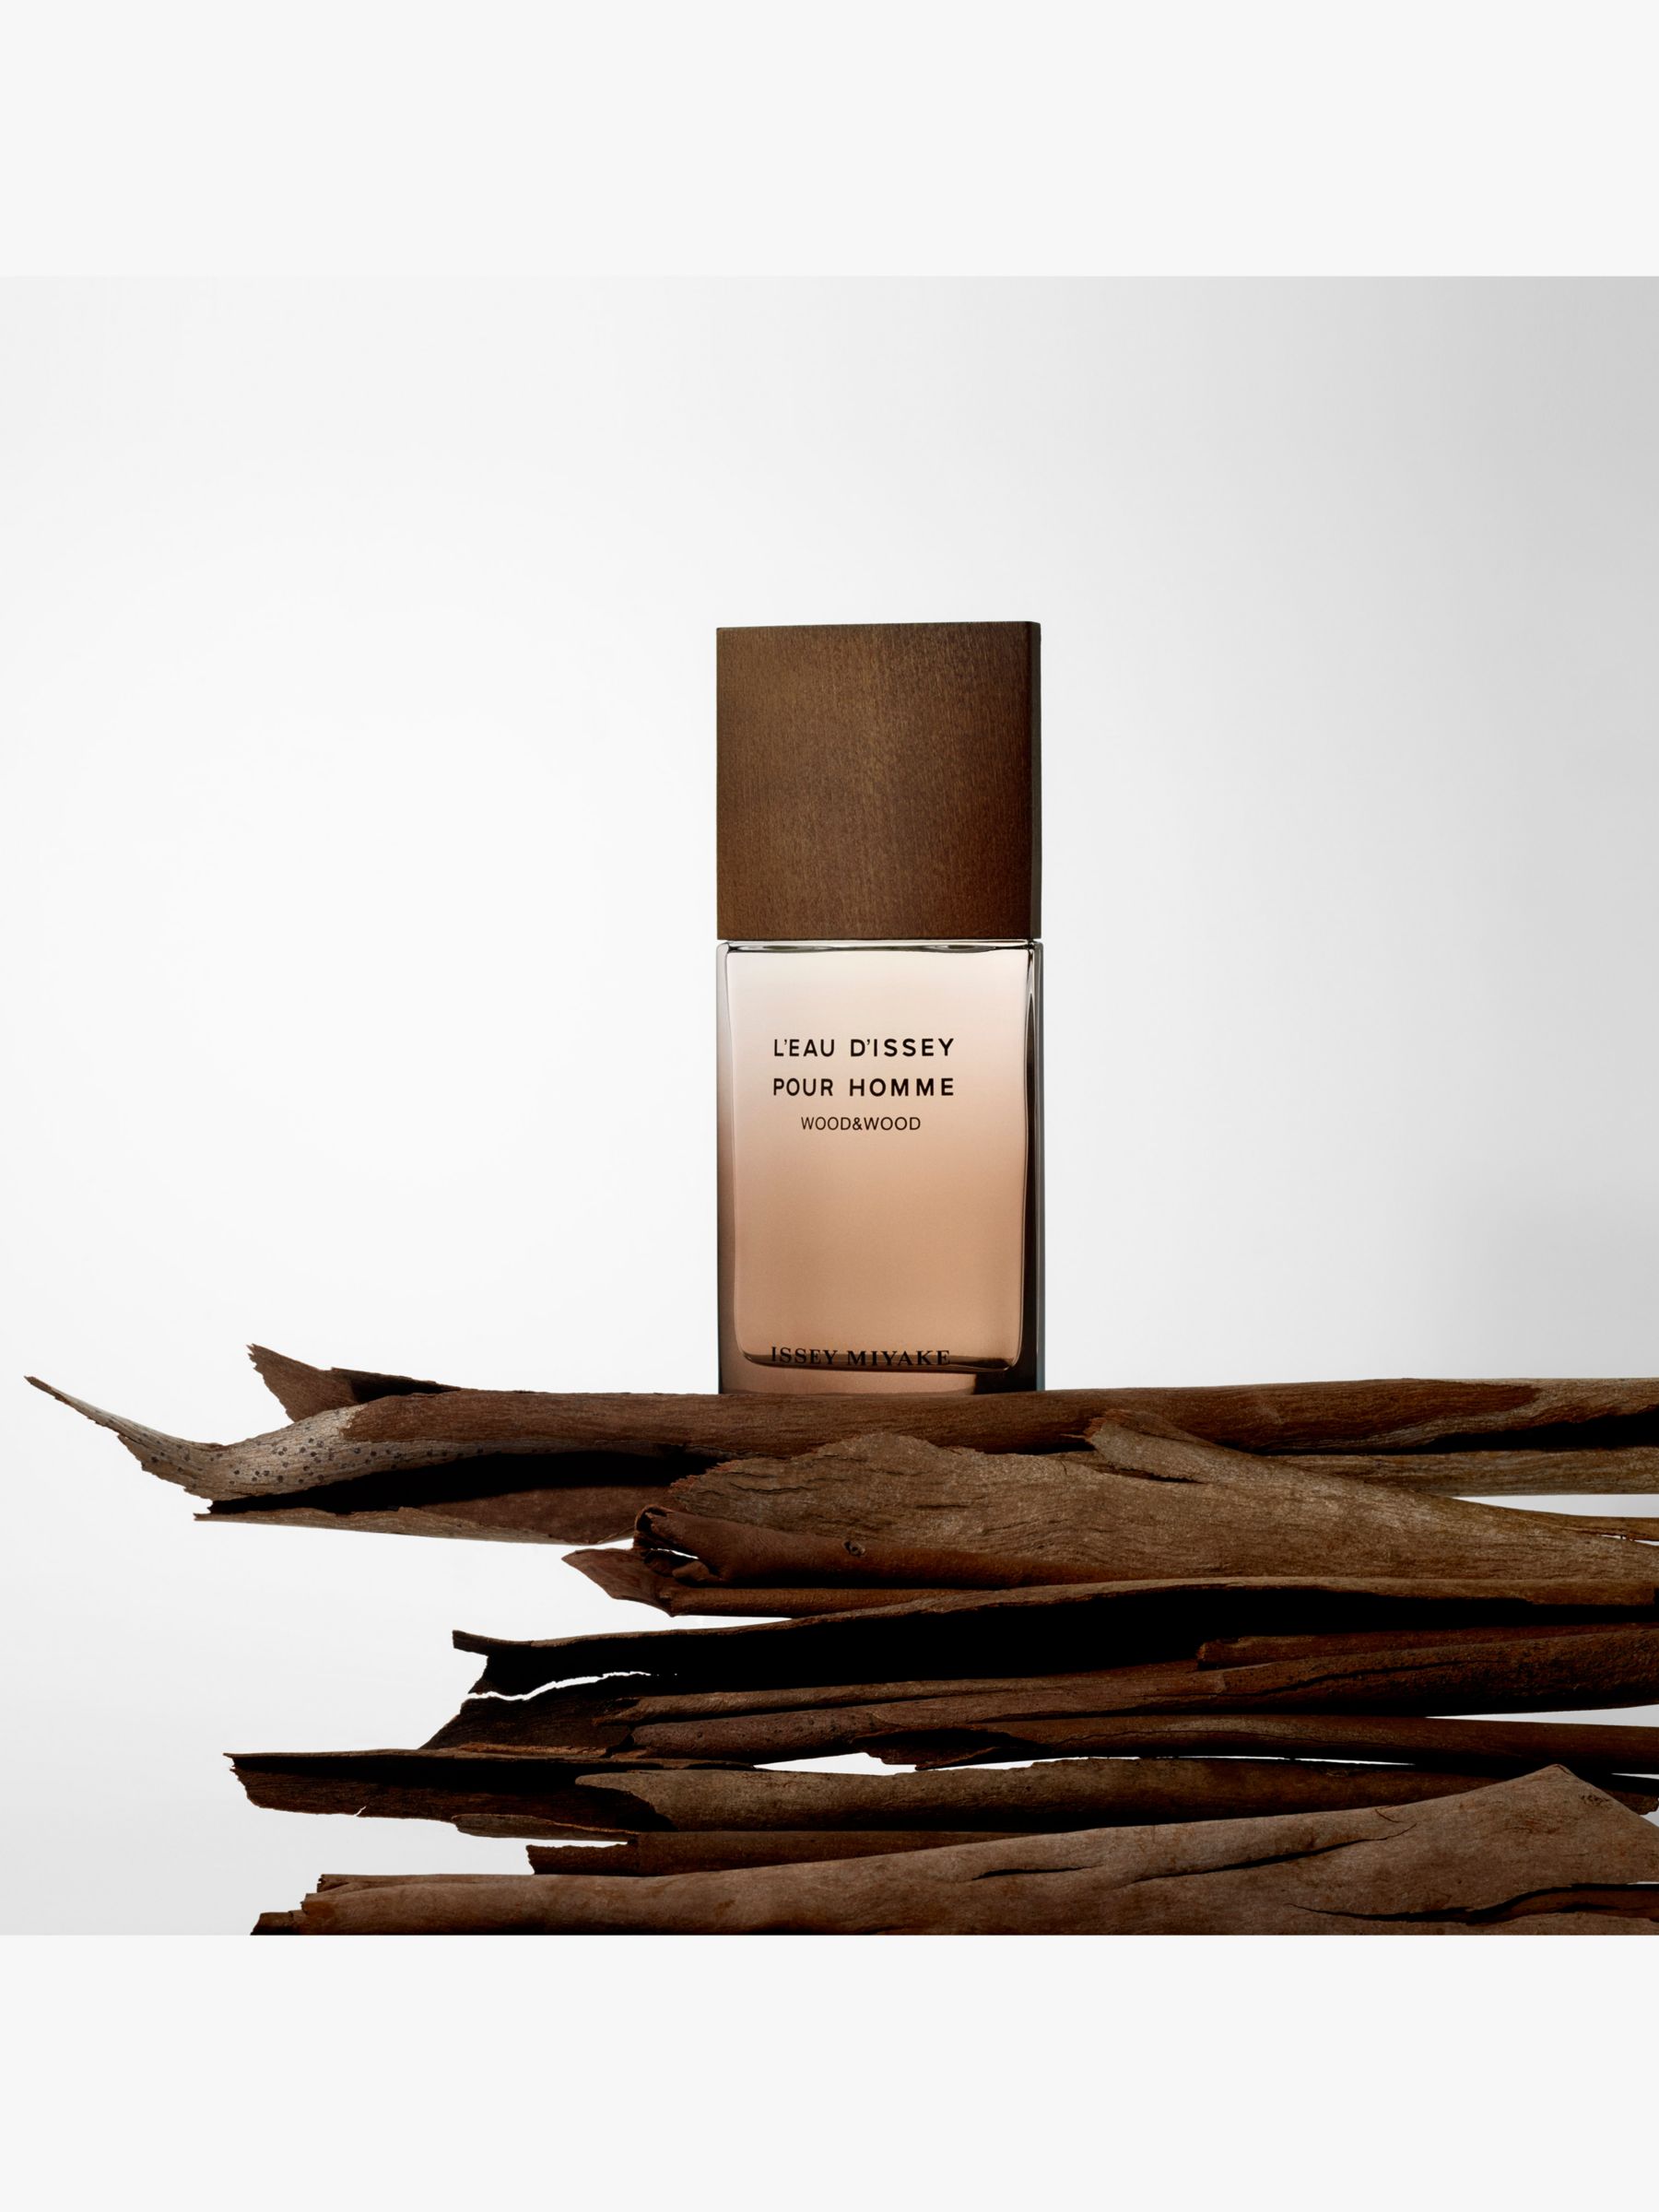 Issey Miyake L'Eau d'Issey Pour Homme Wood & Wood Eau de Parfum Intense, 50ml